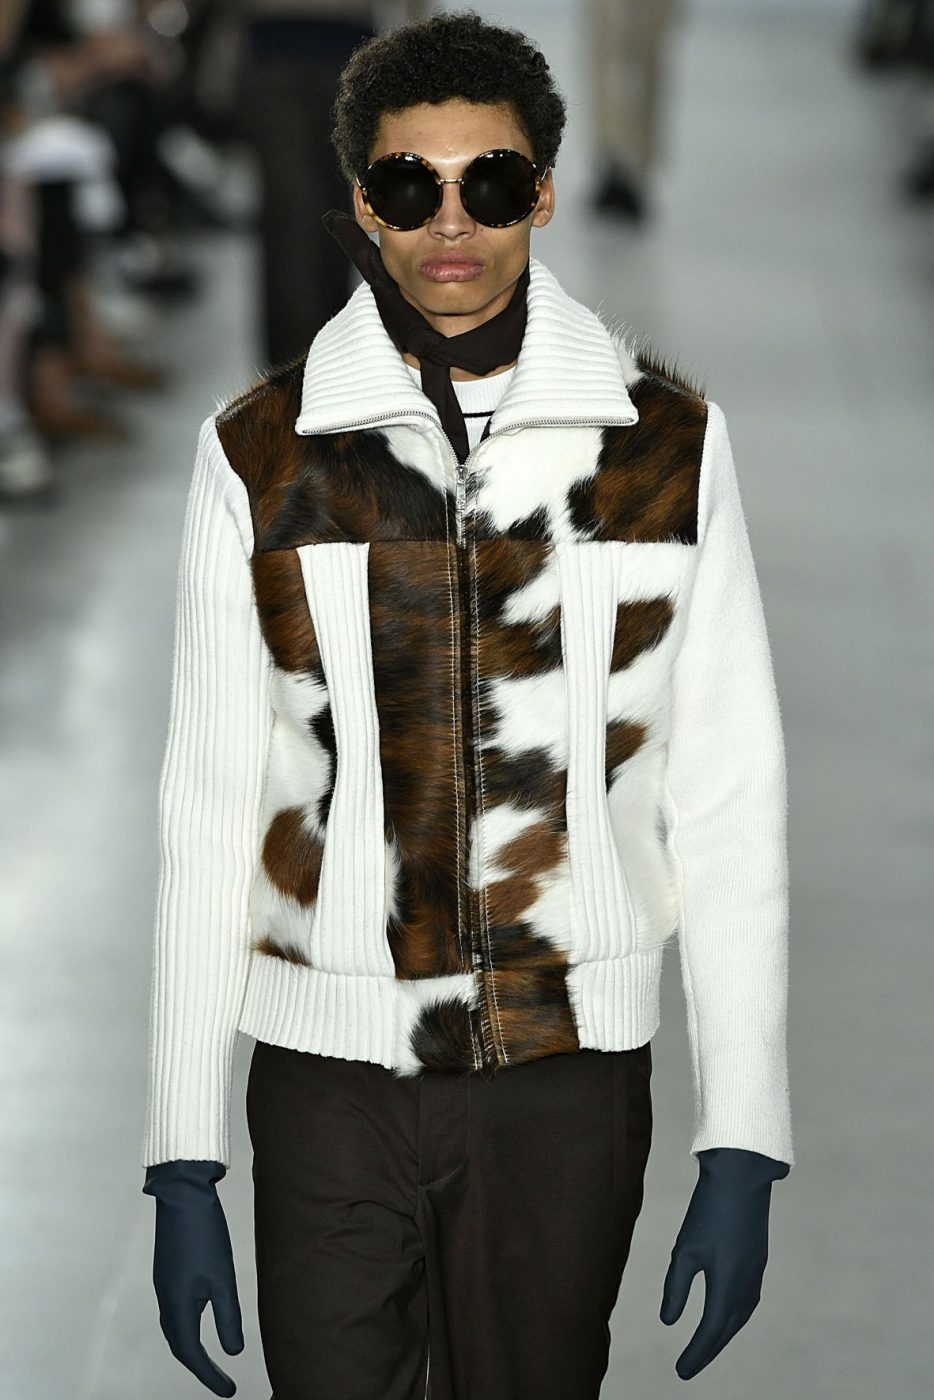 Men's Fur Fashion Week SS17 pt 1